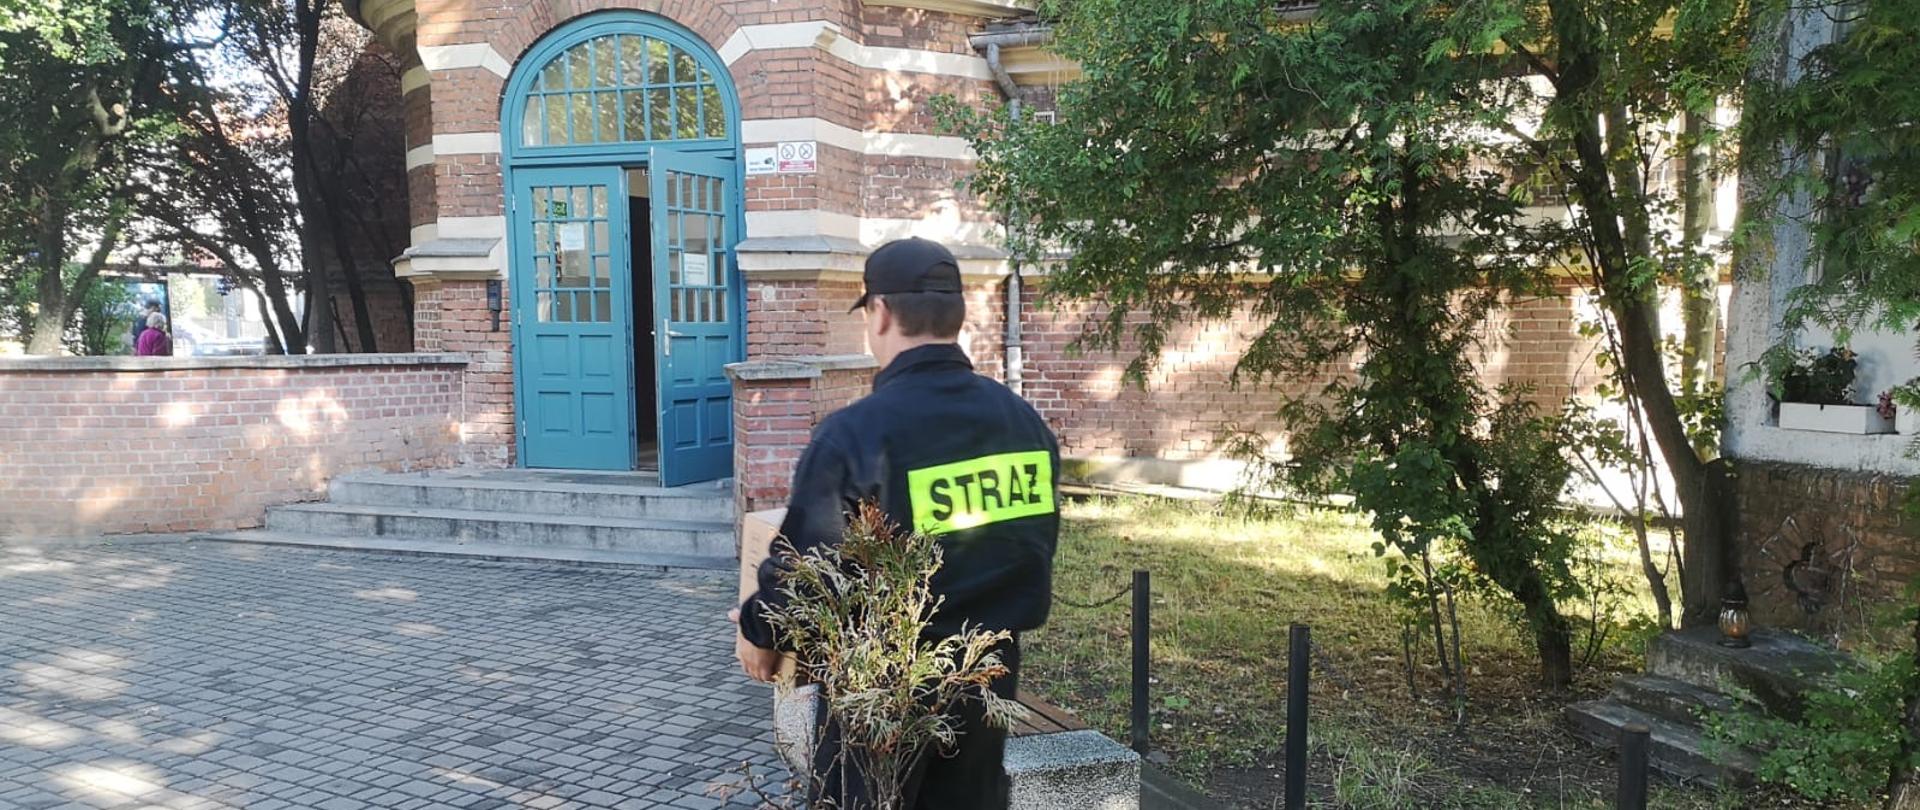 Strażak w mundurze koszarowym idzie przez dziedziniec do wejścia jednej z sopockich szkół, niosąc karton z płynami dezynfekcyjnym